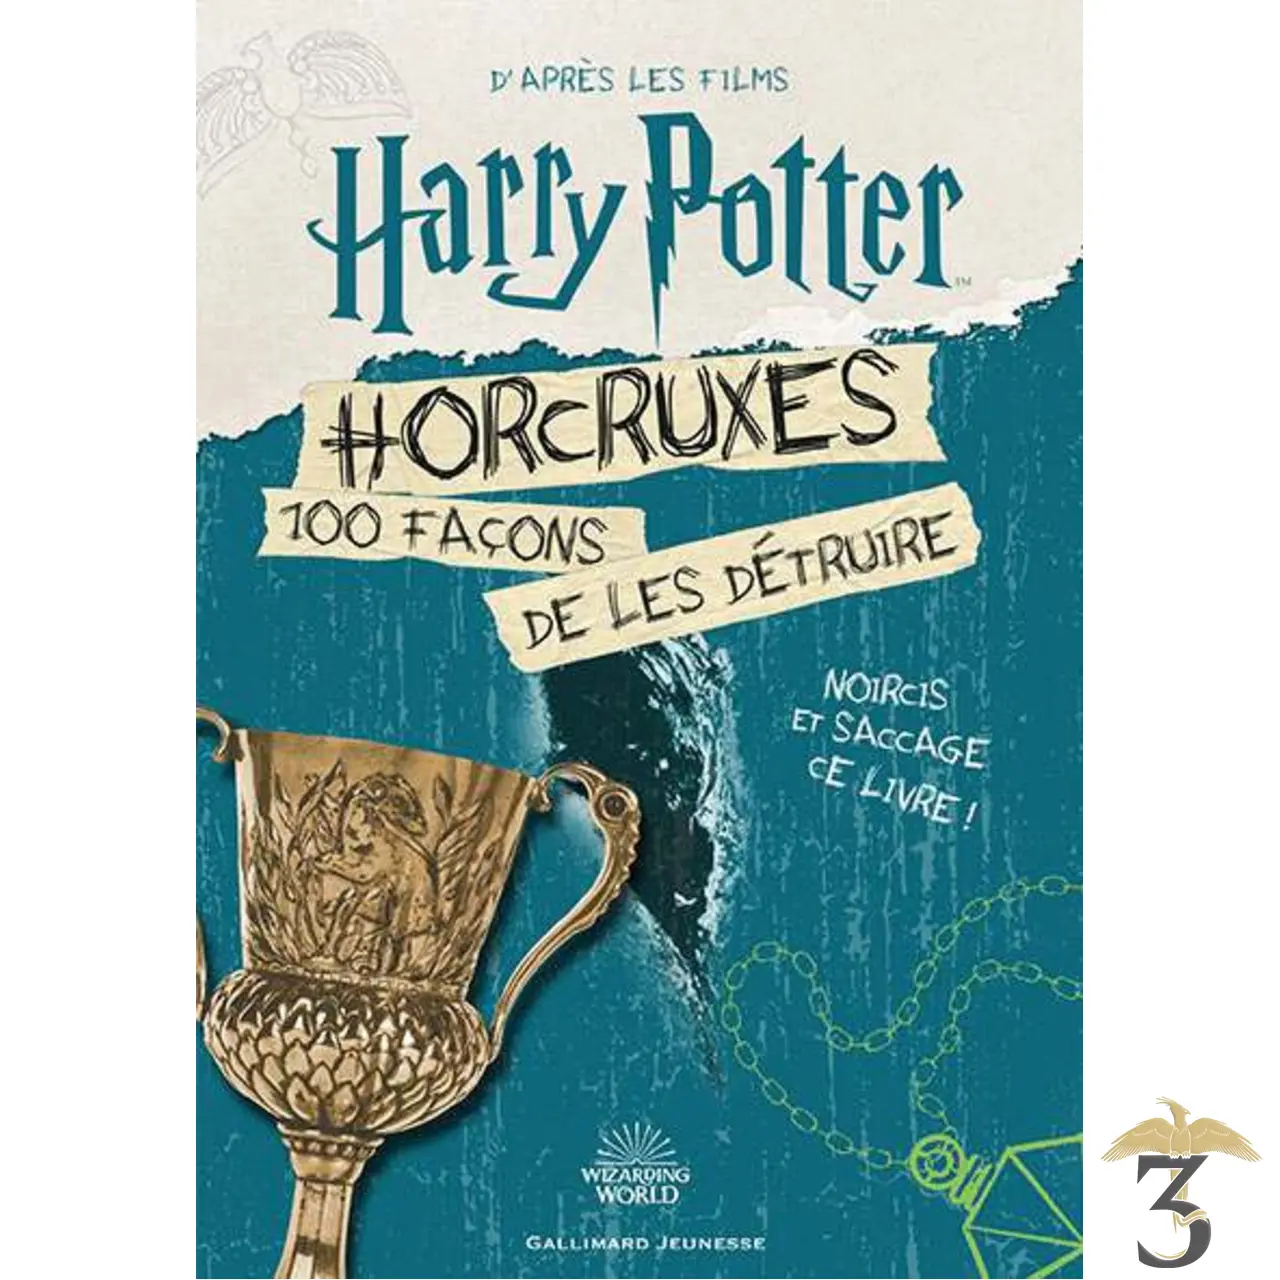 Horcruxes, 100 façons de les détruire - Harry Potter - 3 Reliques Harry  Potter